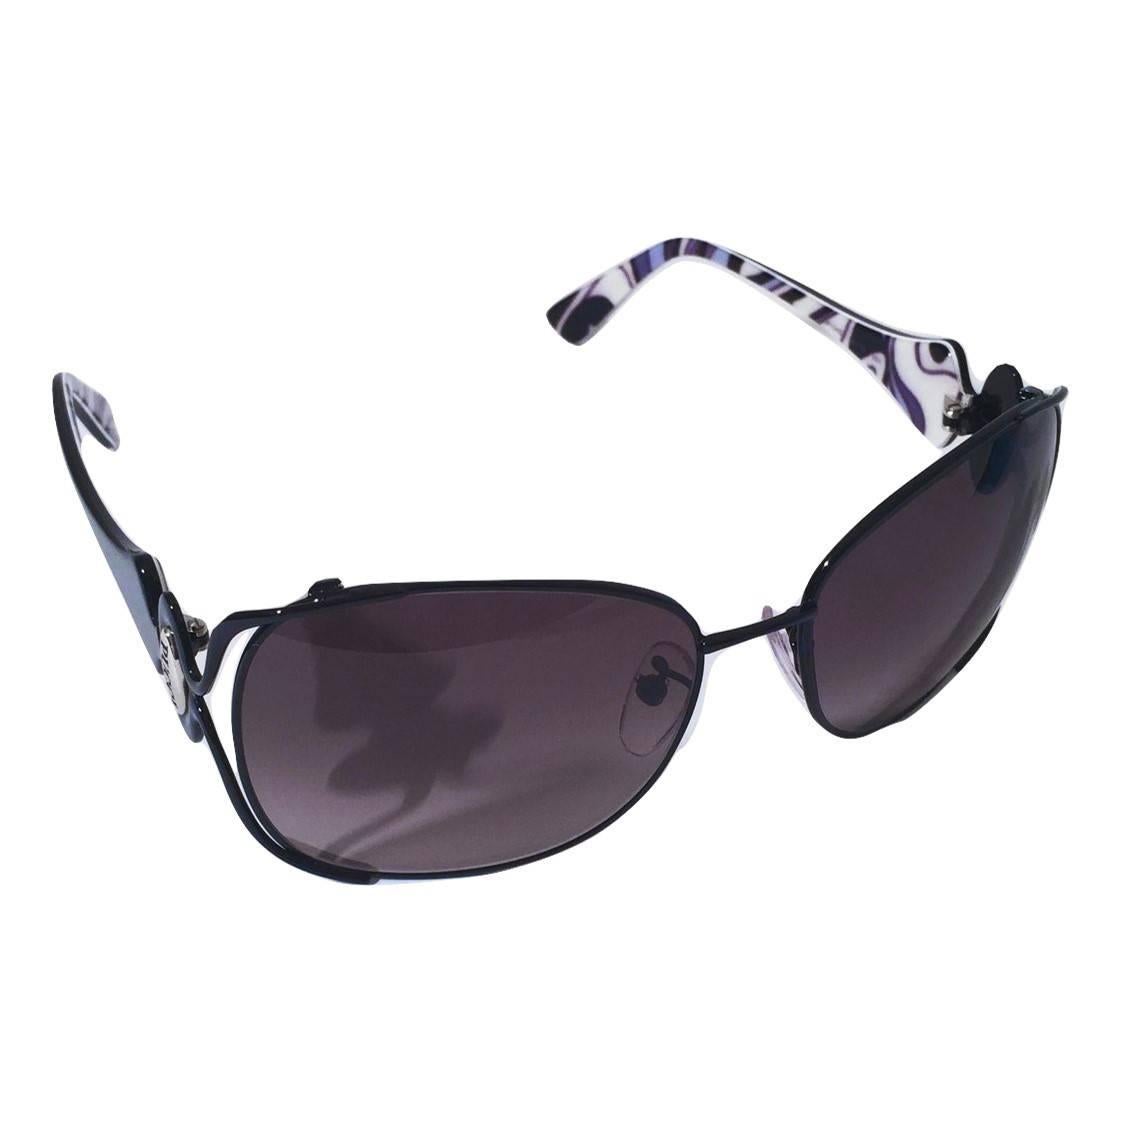 New Emilio Pucci Black Aviator Sunglasses With Case & Box 9